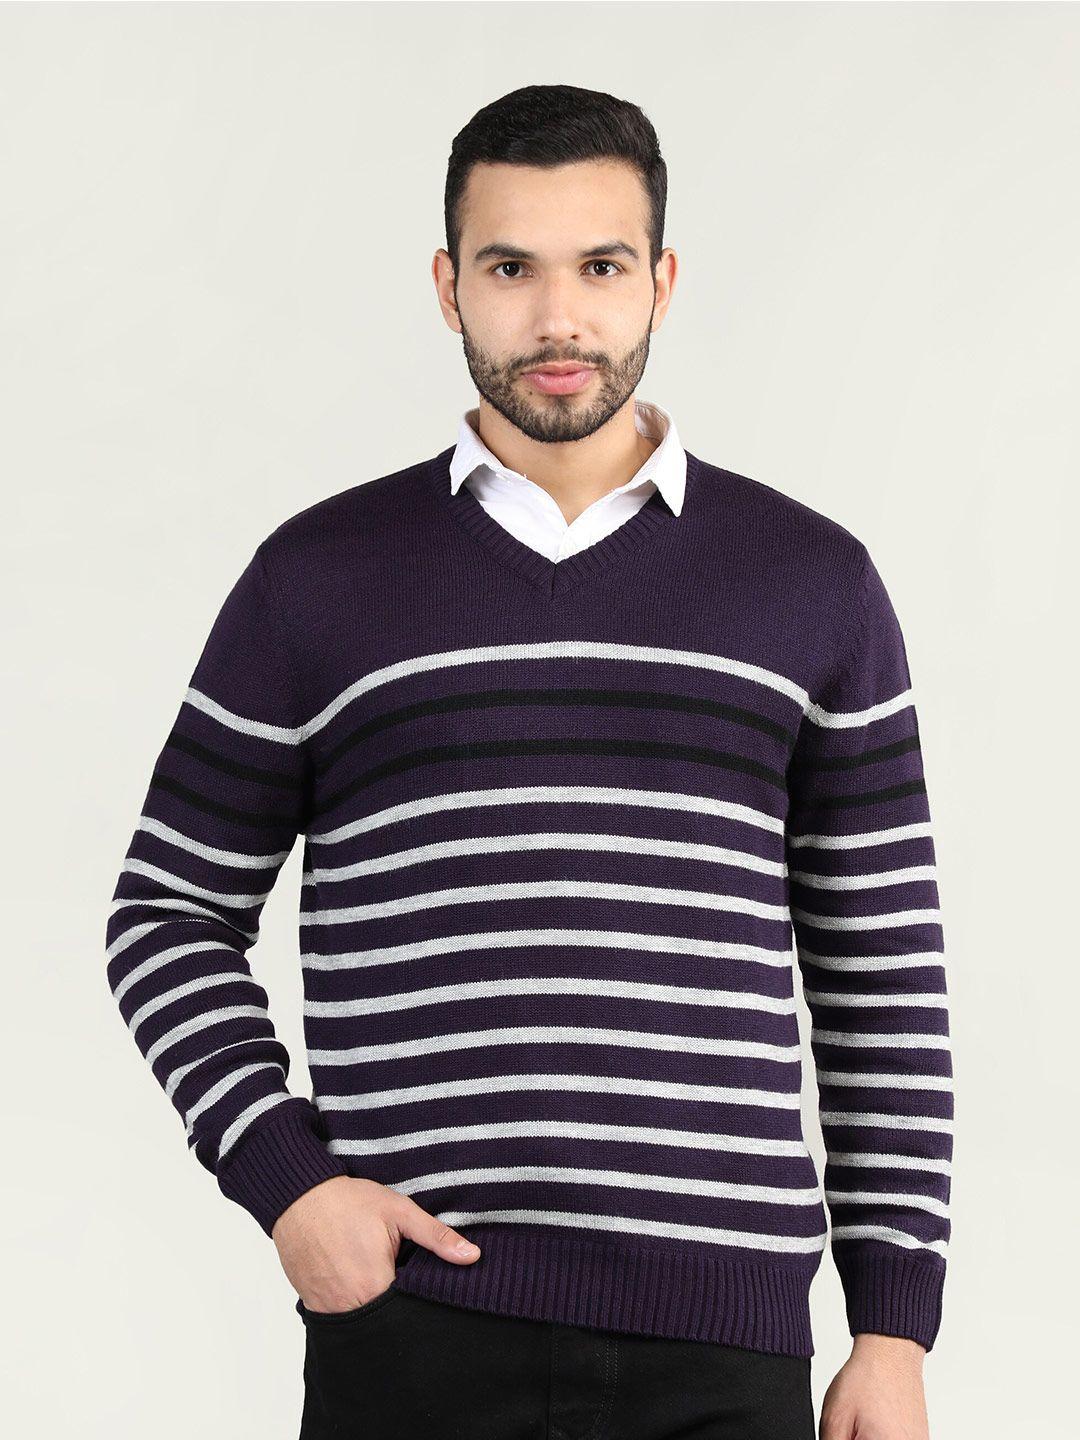 chkokko-men-purple-&-white-striped-cotton-pullover